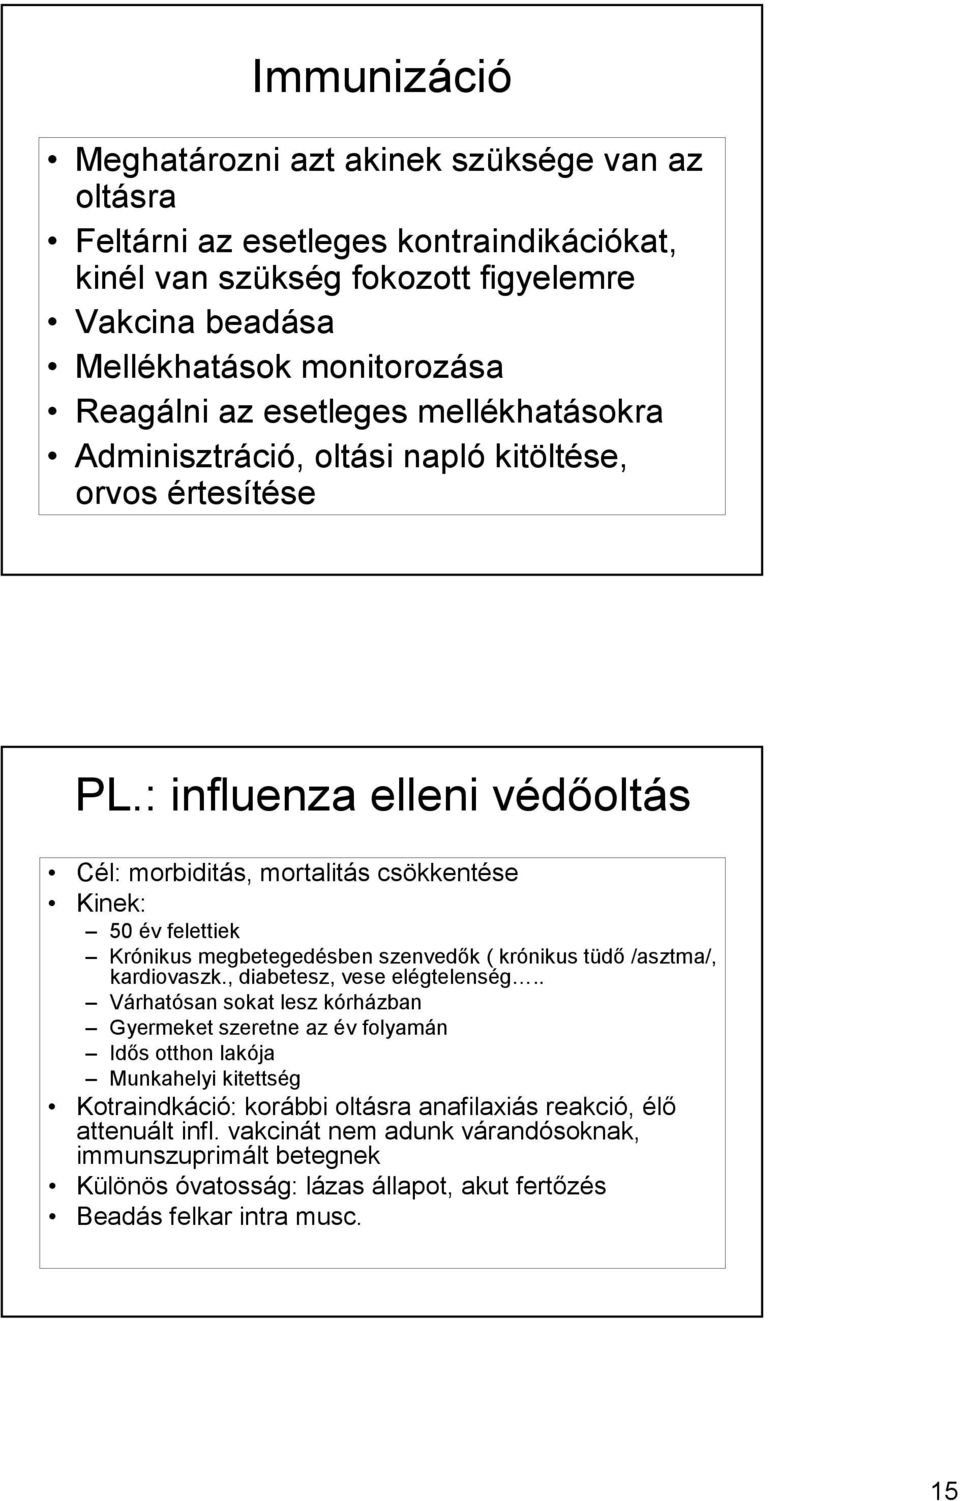 : influenza elleni védıoltás Cél: morbiditás, mortalitás csökkentése Kinek: 50 év felettiek Krónikus megbetegedésben szenvedık ( krónikus tüdı /asztma/, kardiovaszk., diabetesz, vese elégtelenség.